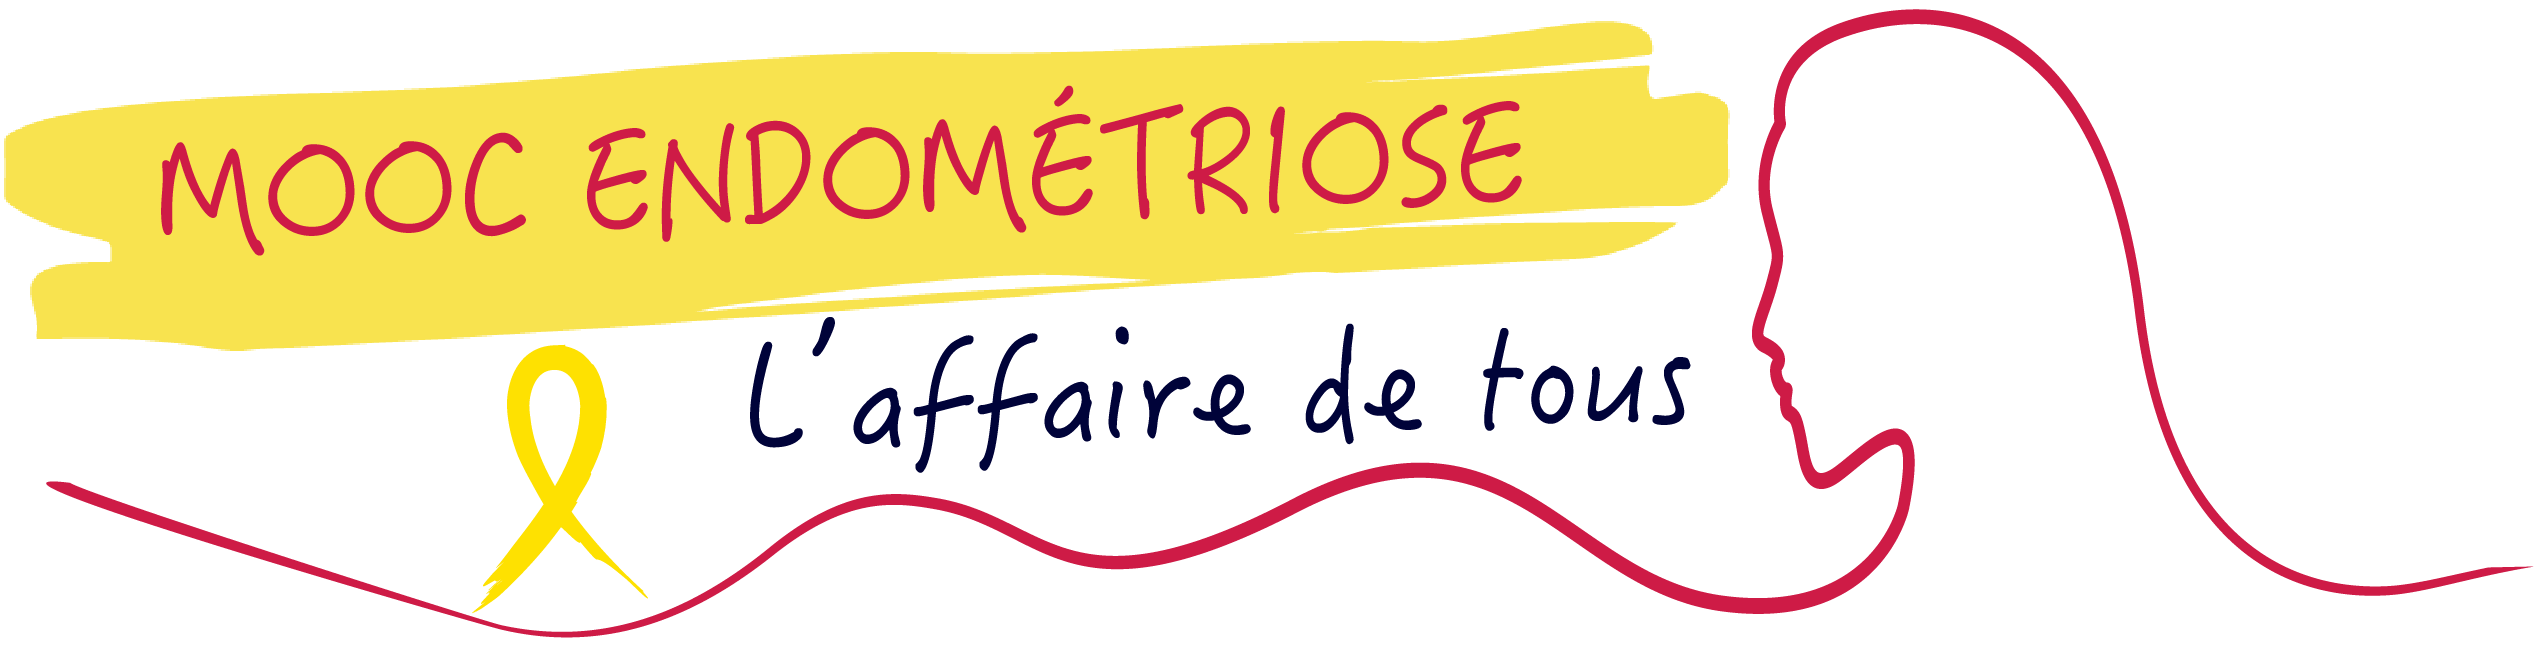 Logo Endométriose : Mooc